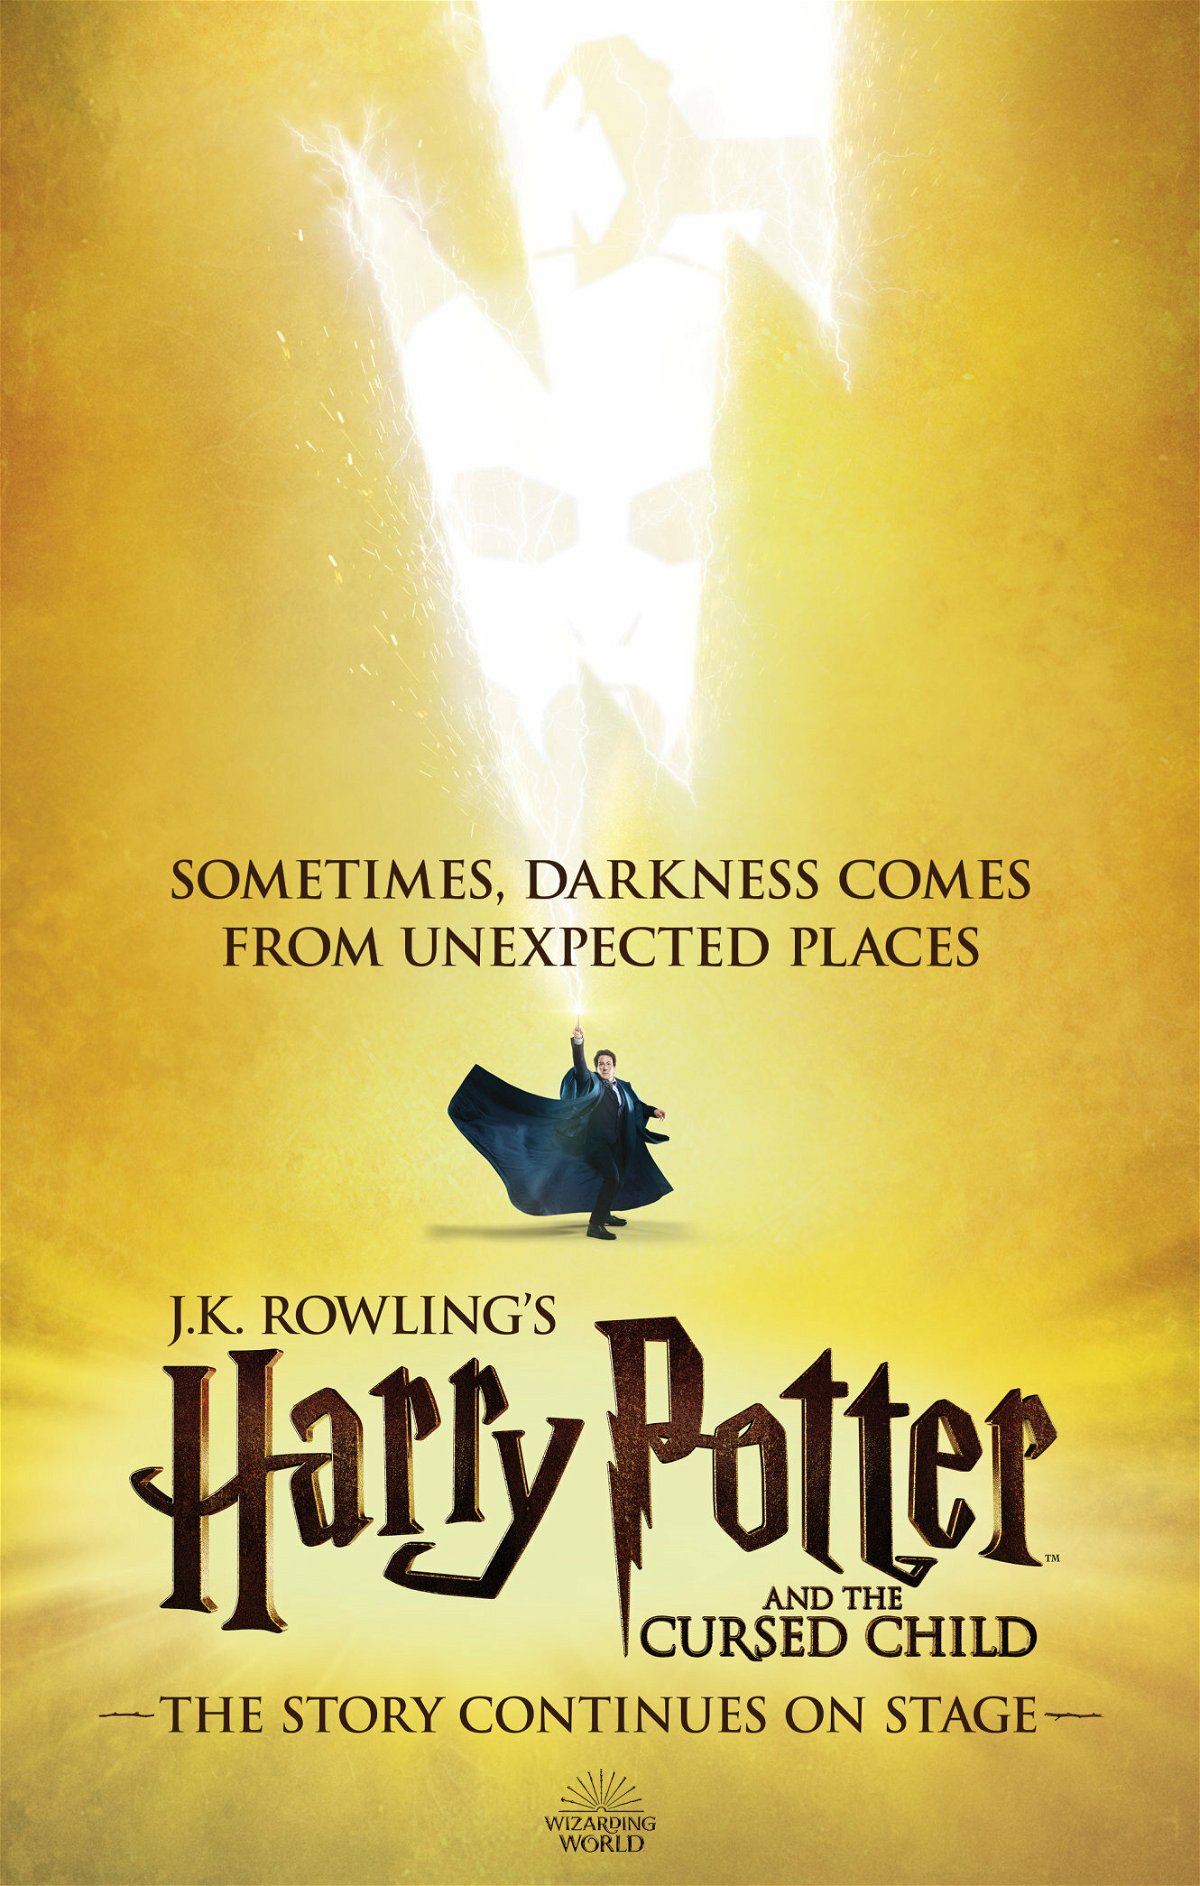 Nuovo poster di Harry Potter e la maledizione dell'erede